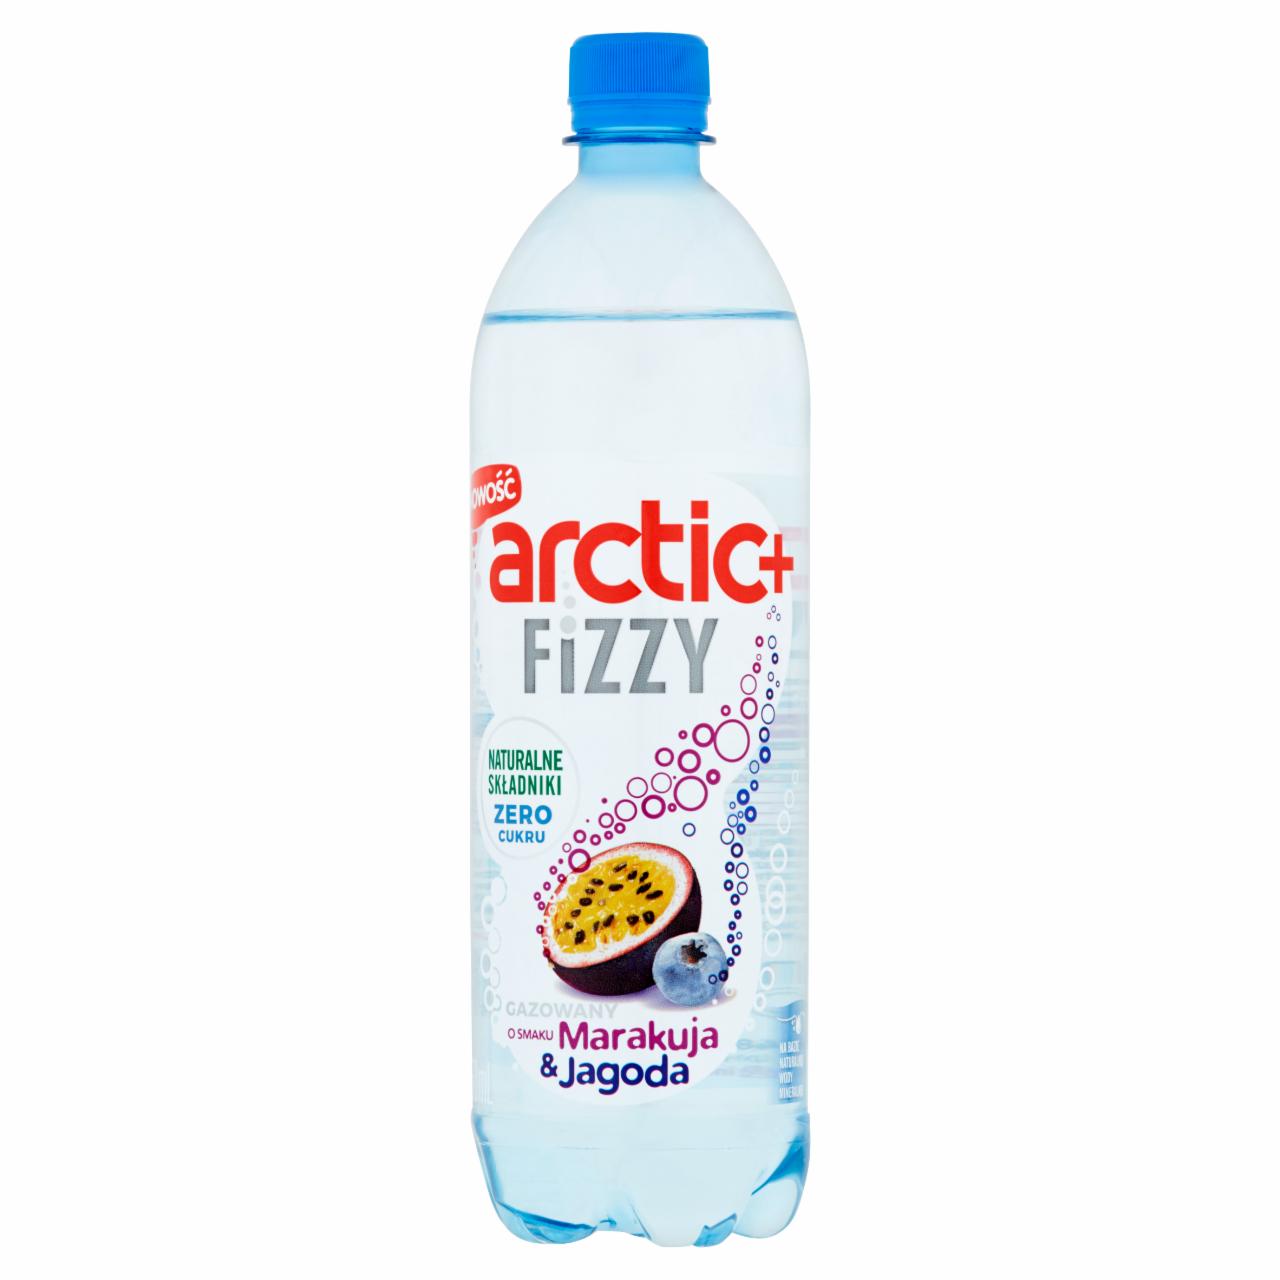 Zdjęcia - Arctic+ Fizzy Napój gazowany o smaku marakuja & jagoda 750 ml